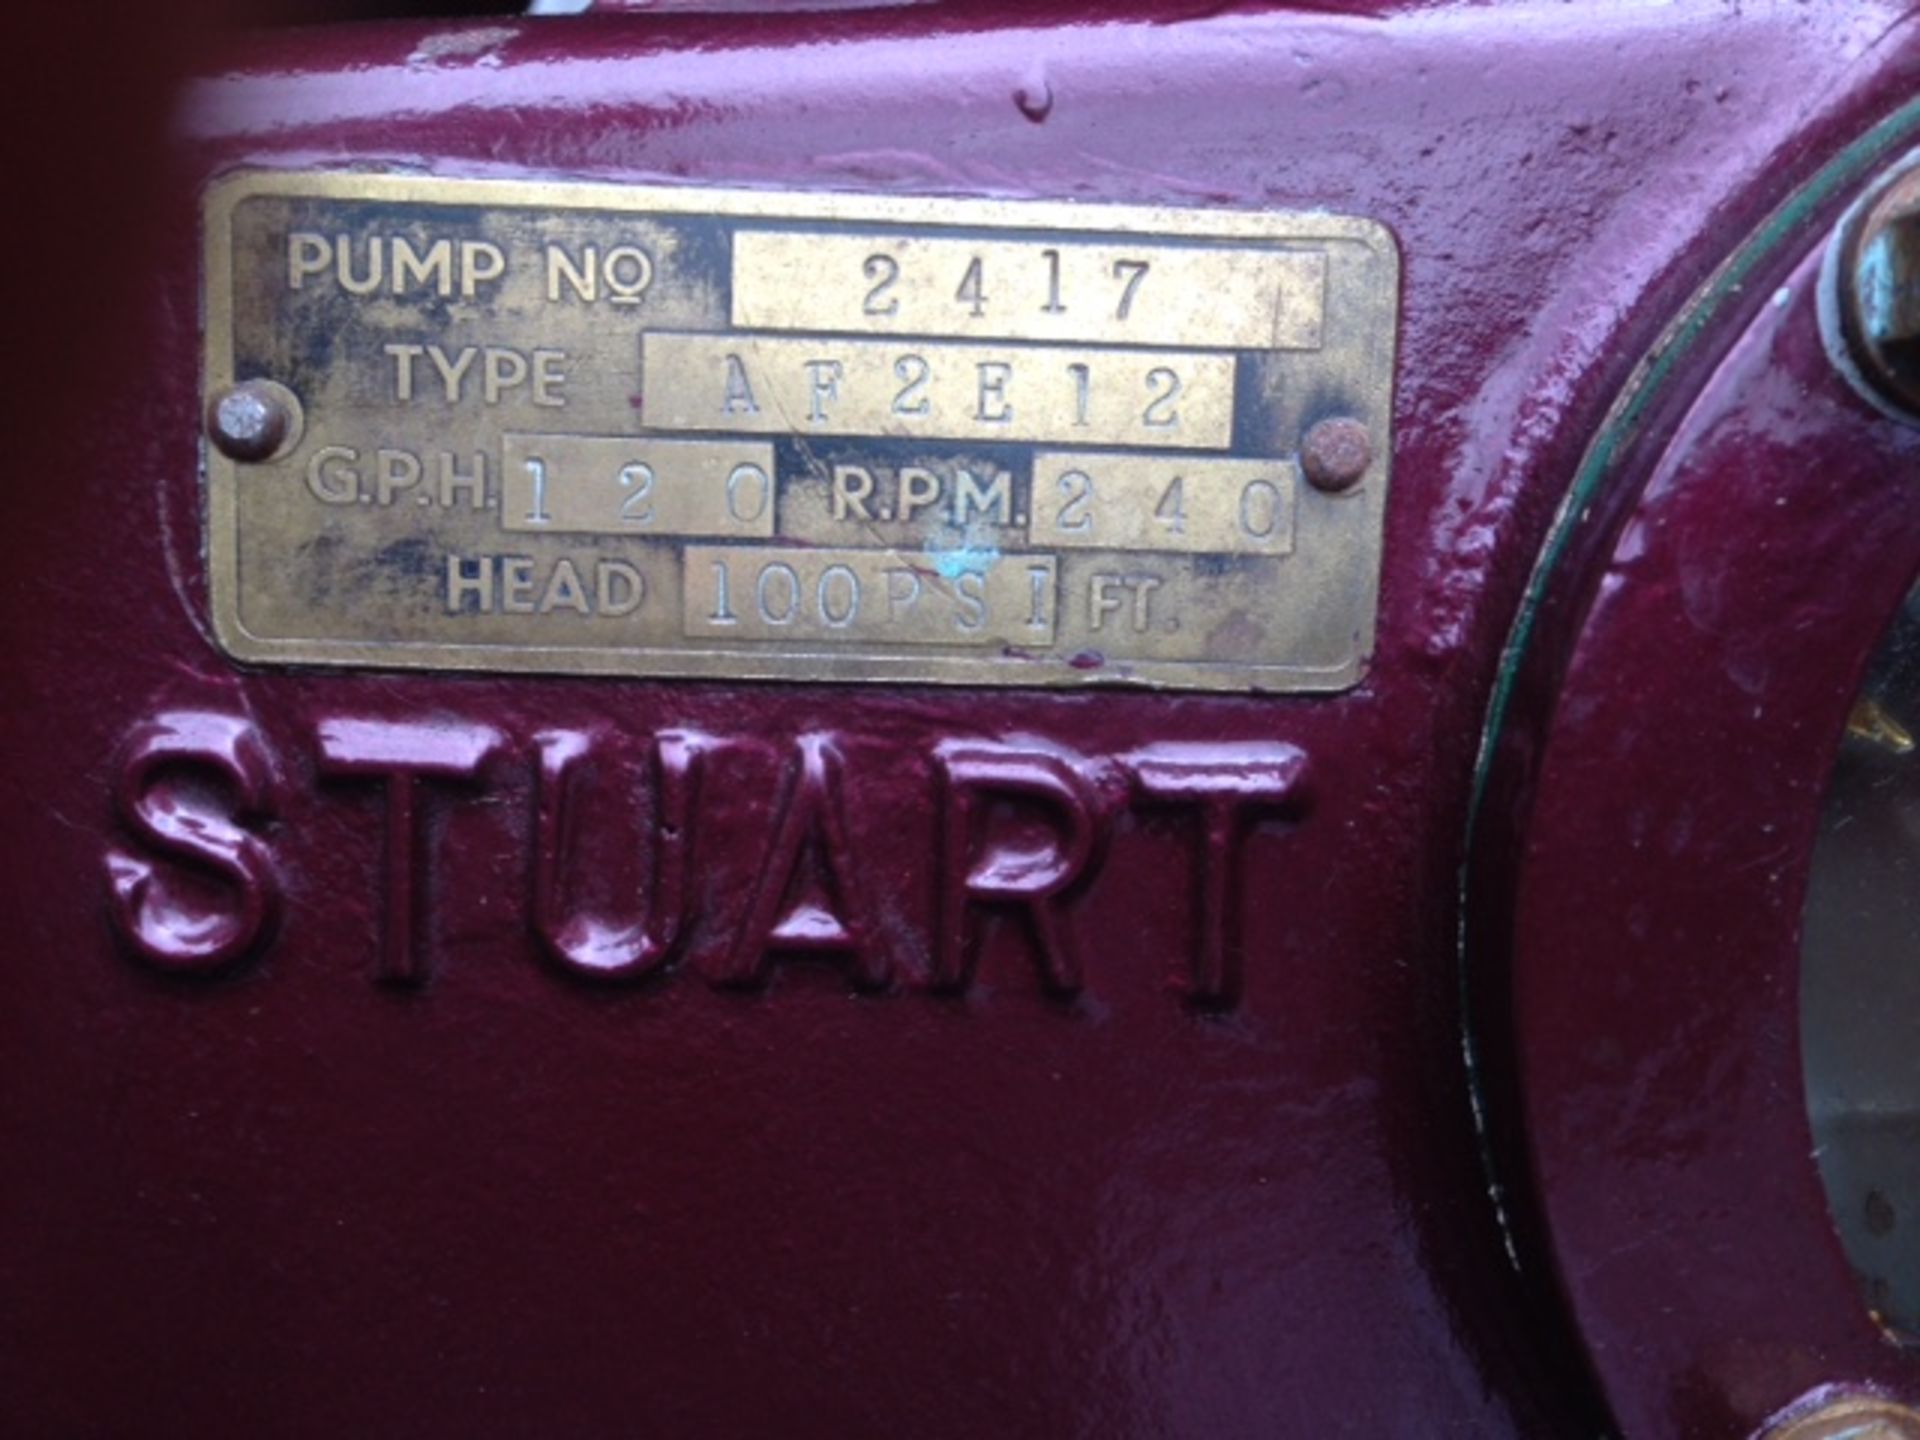 STUART TYPE AF2E12 STATIONARY ENGINE PUMP NUMBER 2417, - Image 2 of 3